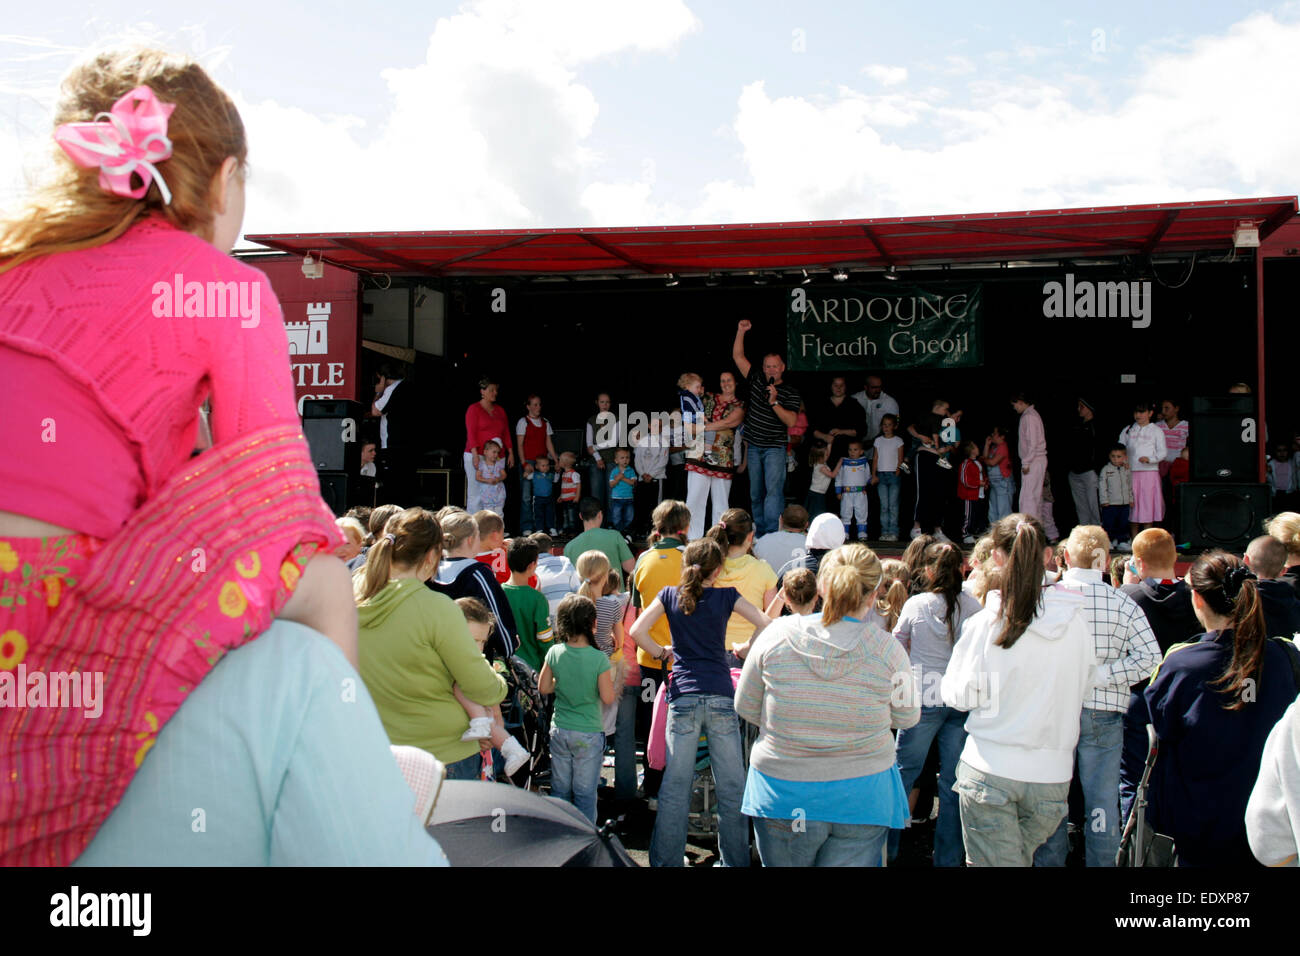 La foule à la traditionnelle ardoyne fleadh cheoil irish festival Banque D'Images